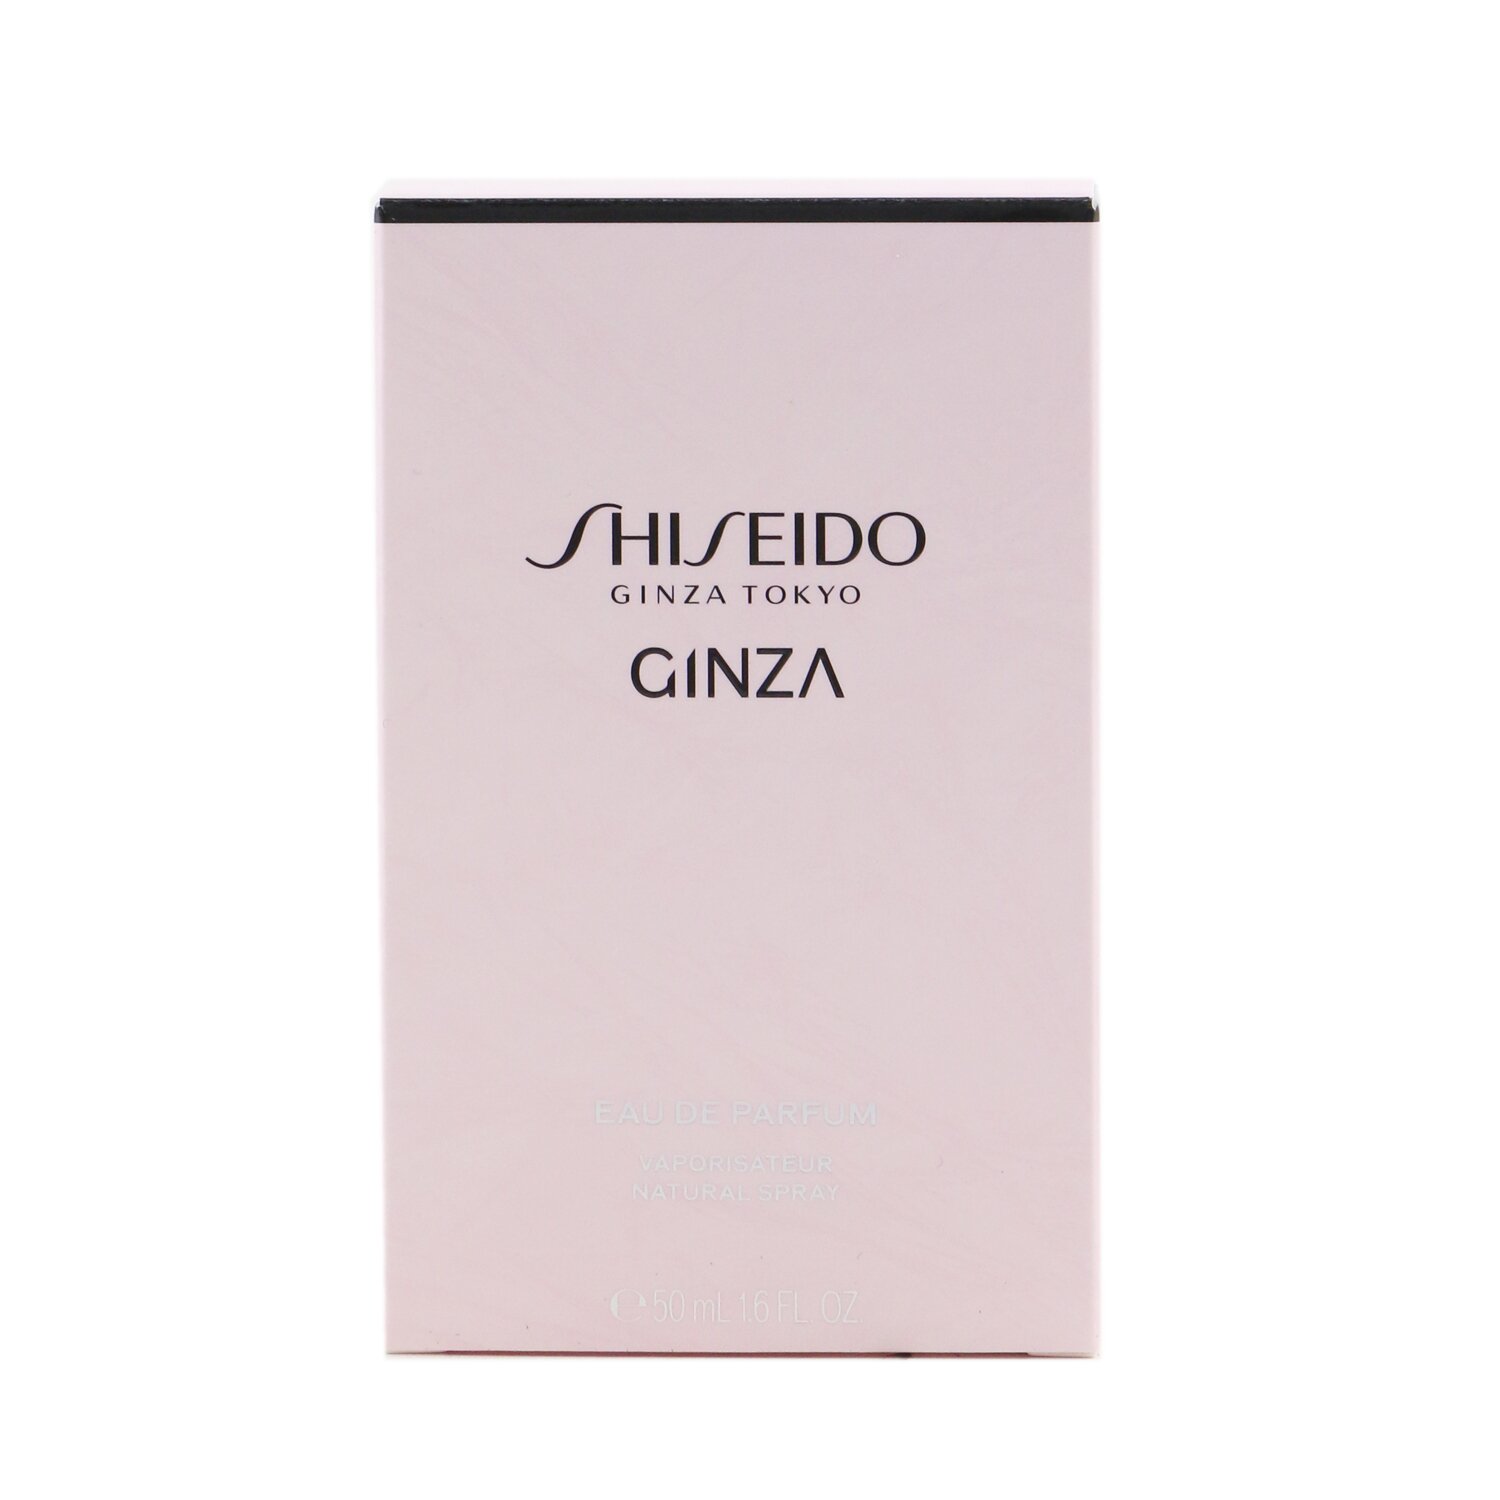 資生堂Shiseido - Ginza 香水噴霧| 草莓網Strawberrynet直營店| 樂天